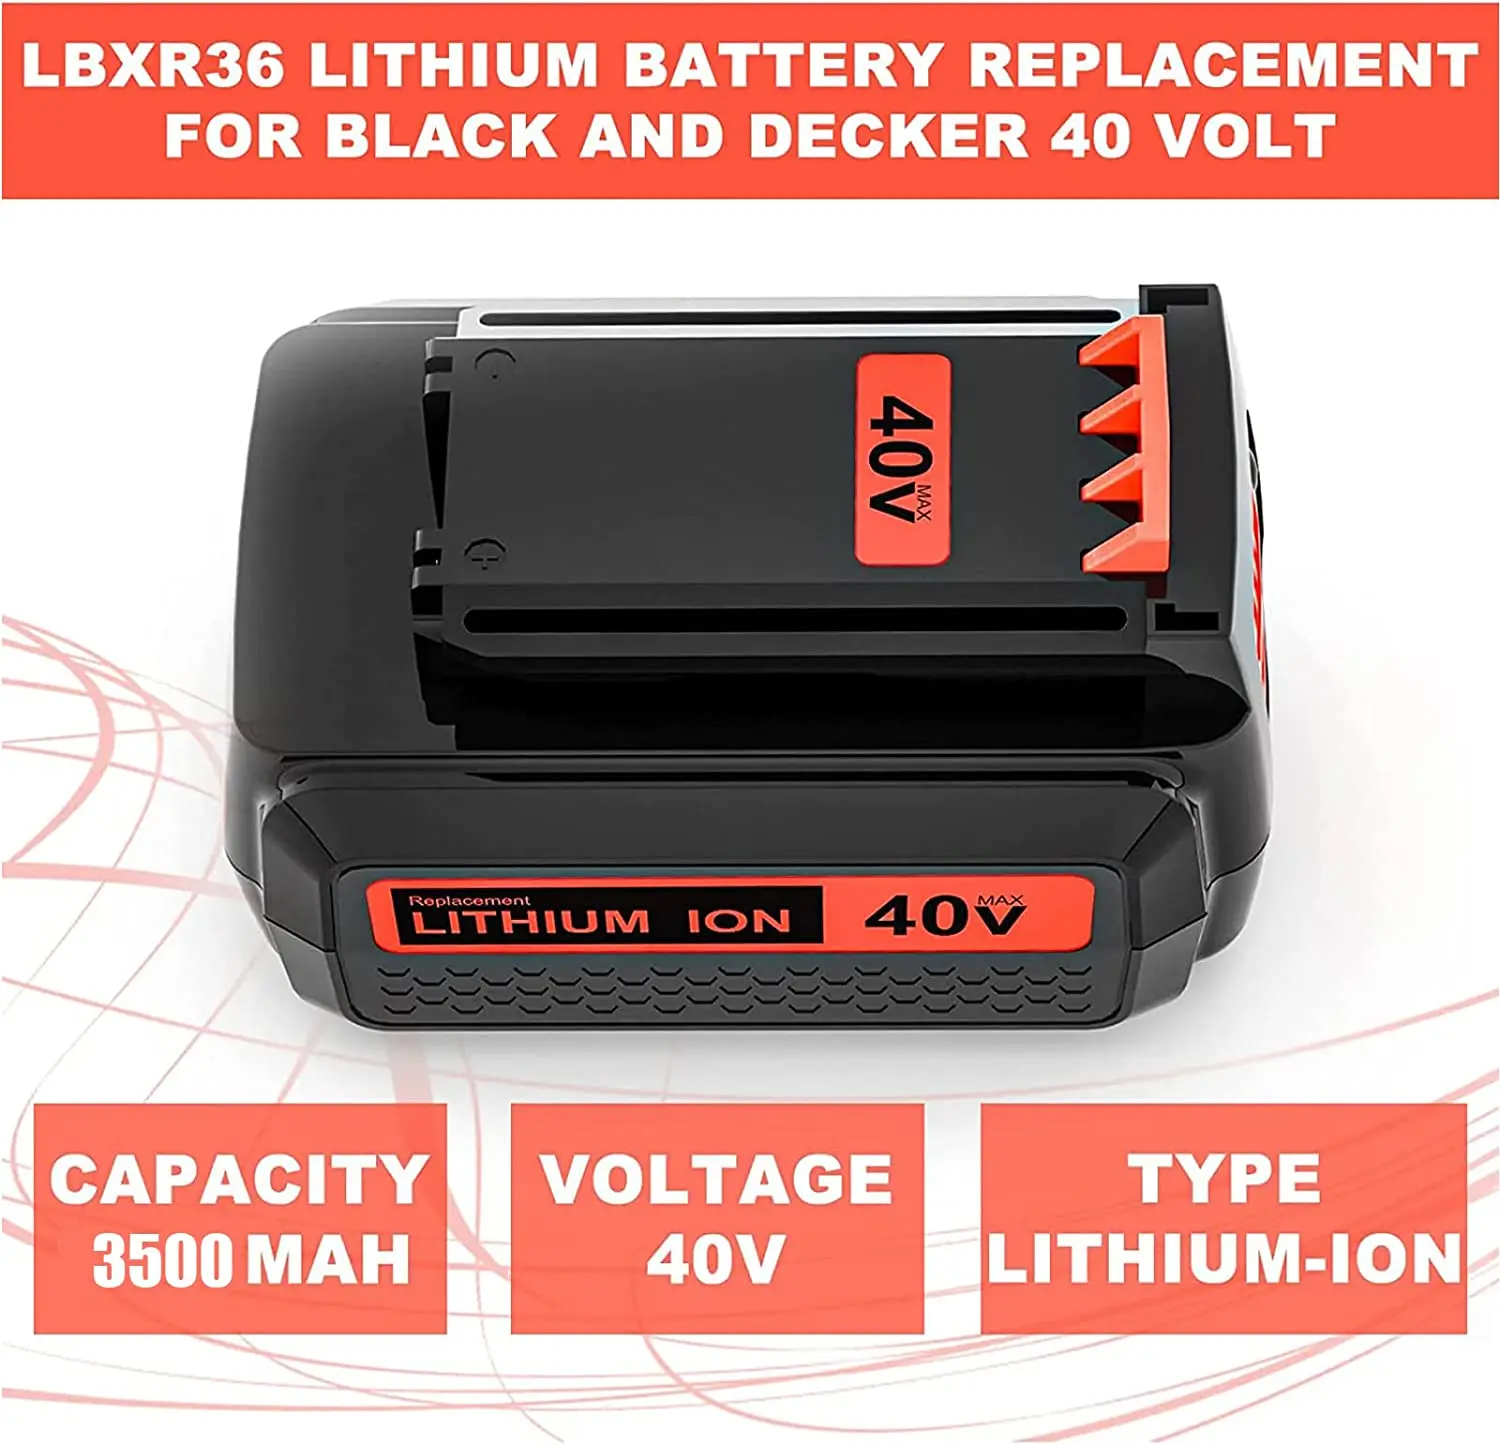 https://ae01.alicdn.com/kf/S15dc9bab999a42848c9b7fb4fa1f37d9H/36V-3-5Ah-Replacement-Battery-for-Black-Decker-36V-40V-LBX2040-LBX36-LBXR36-LBXR2036-LST540-LCS1240.jpg